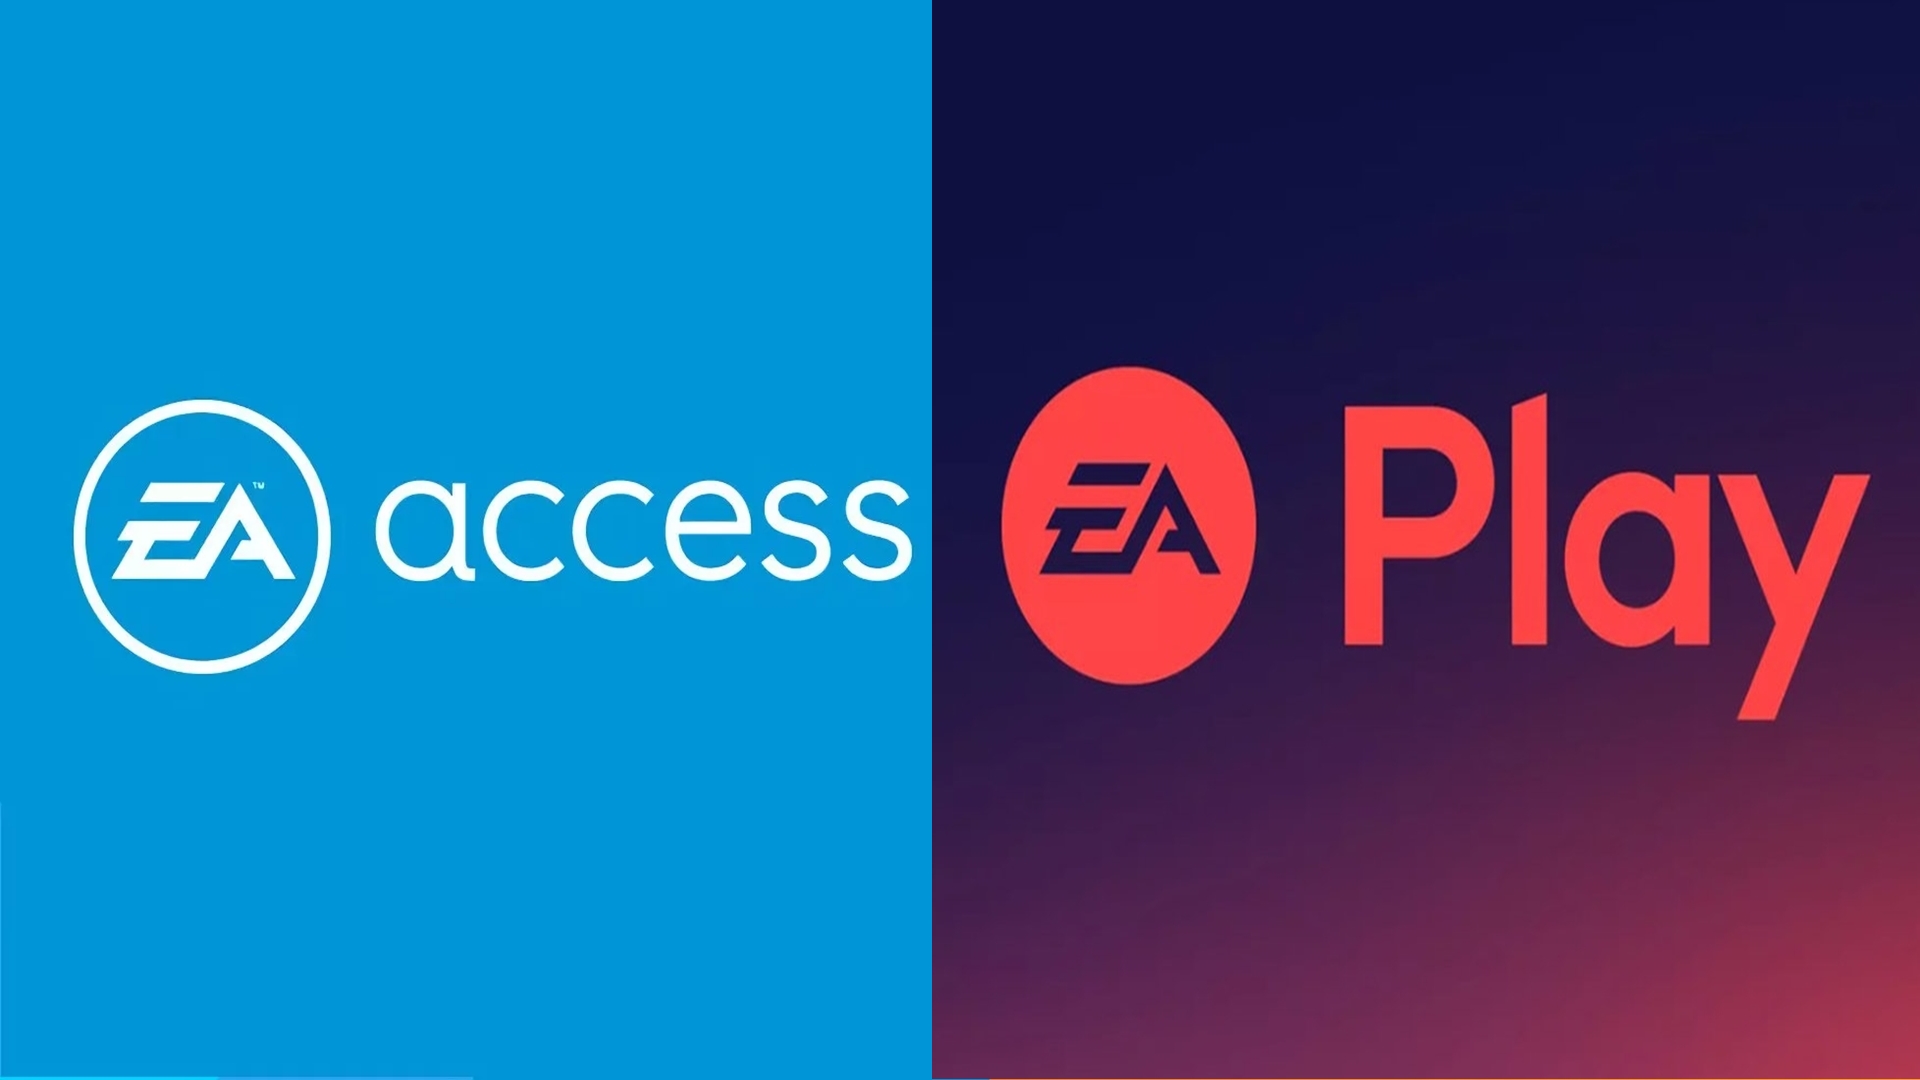 EA Access será EA Play e poderá ser integrado ao Xbox Game Pass